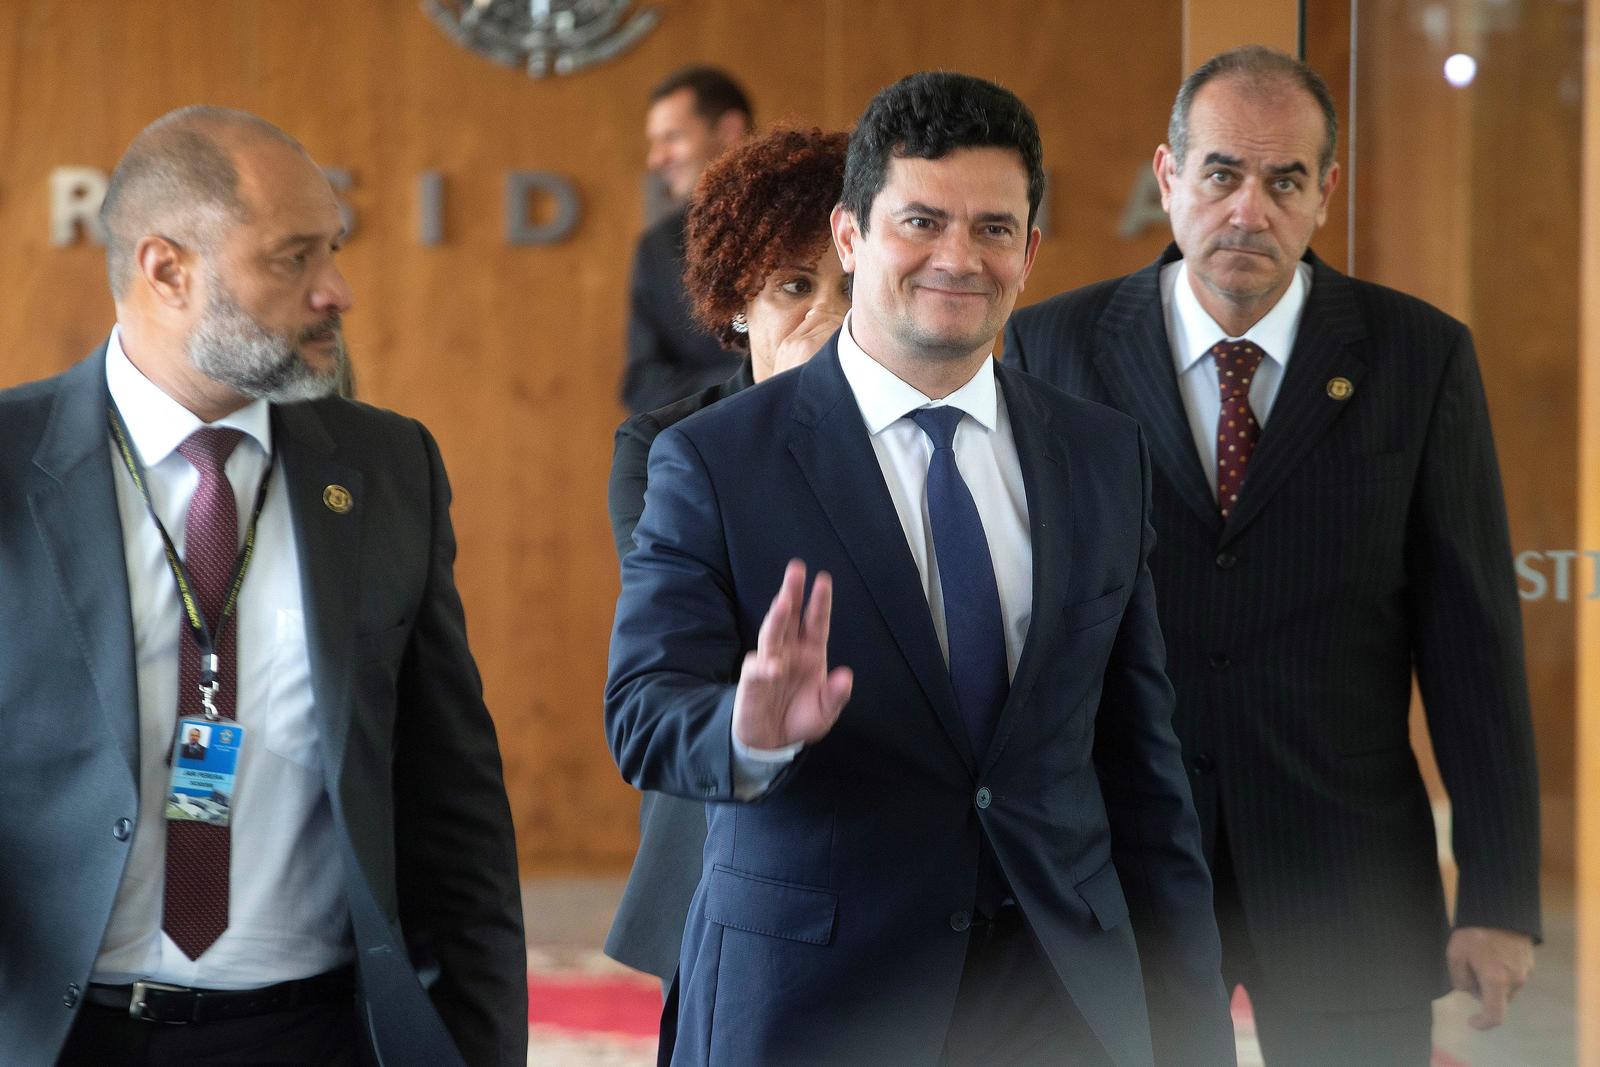 Su futuro. Se rumorea que el juez Sergio Moro podría tener aspiraciones presidenciales en los comicios de 2022.